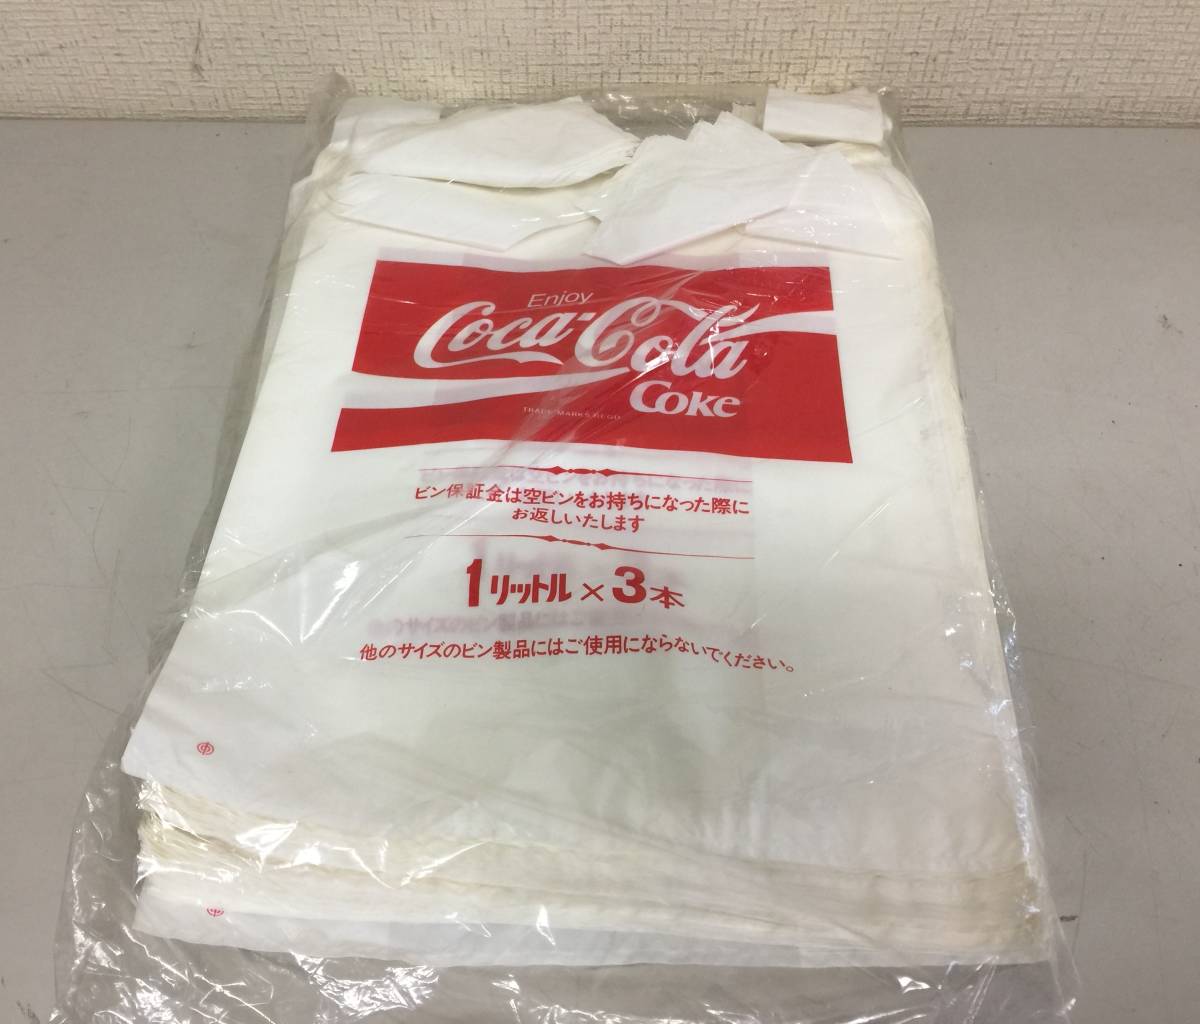 Coca-Cola Coca * Cola ручная сумка винил пакет 100 шт. комплект не использовался 1 литров x3шт.@ подлинная вещь Showa Retro A7.1